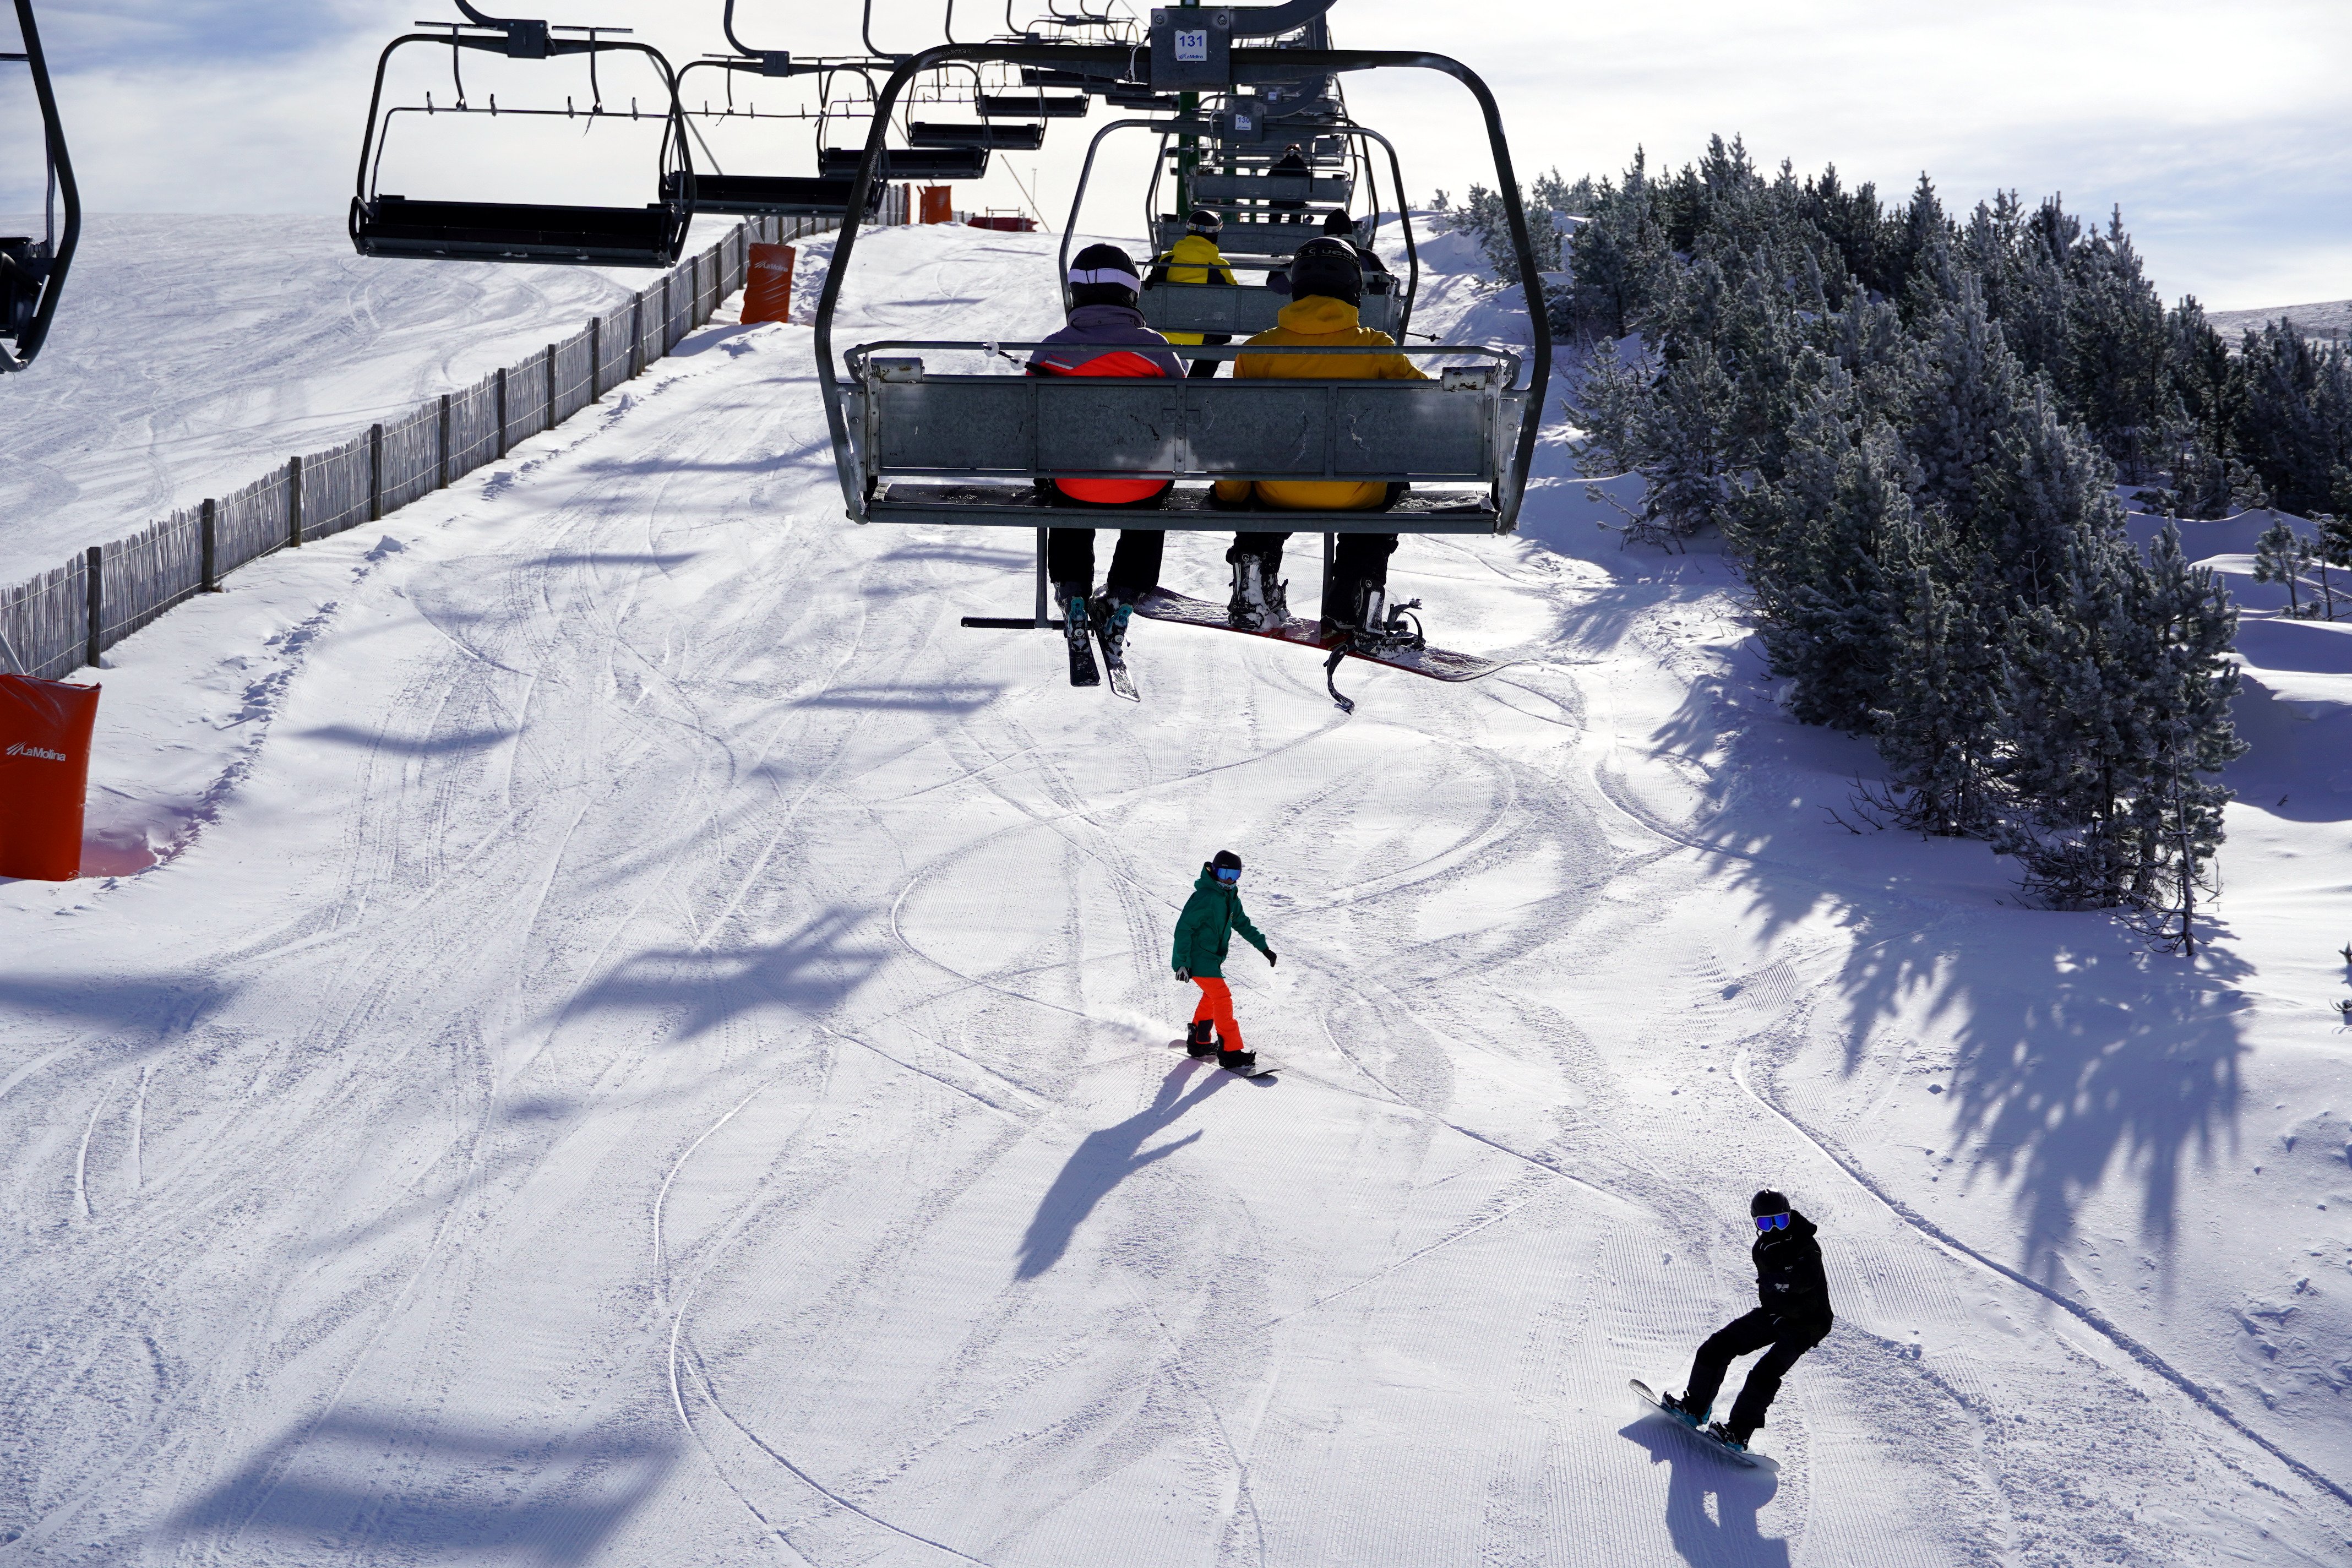 Quina és la importància del sector de l’esquí per Catalunya?